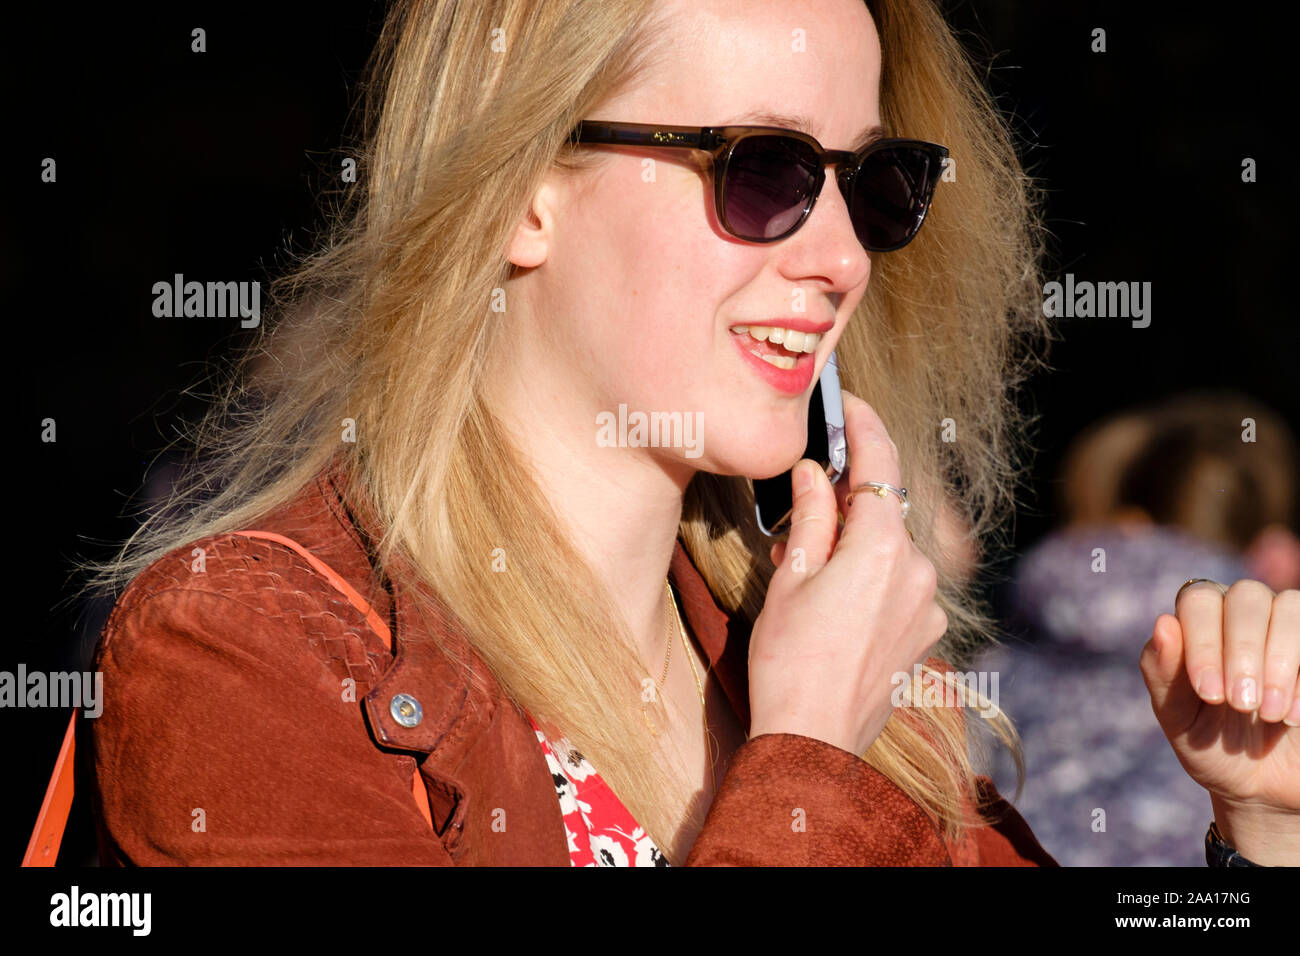 Donna, 20 anni, capelli biondi, abito casual alla moda, occhiali da sole, con il telefono cellulare, sorridendo. Foto Stock